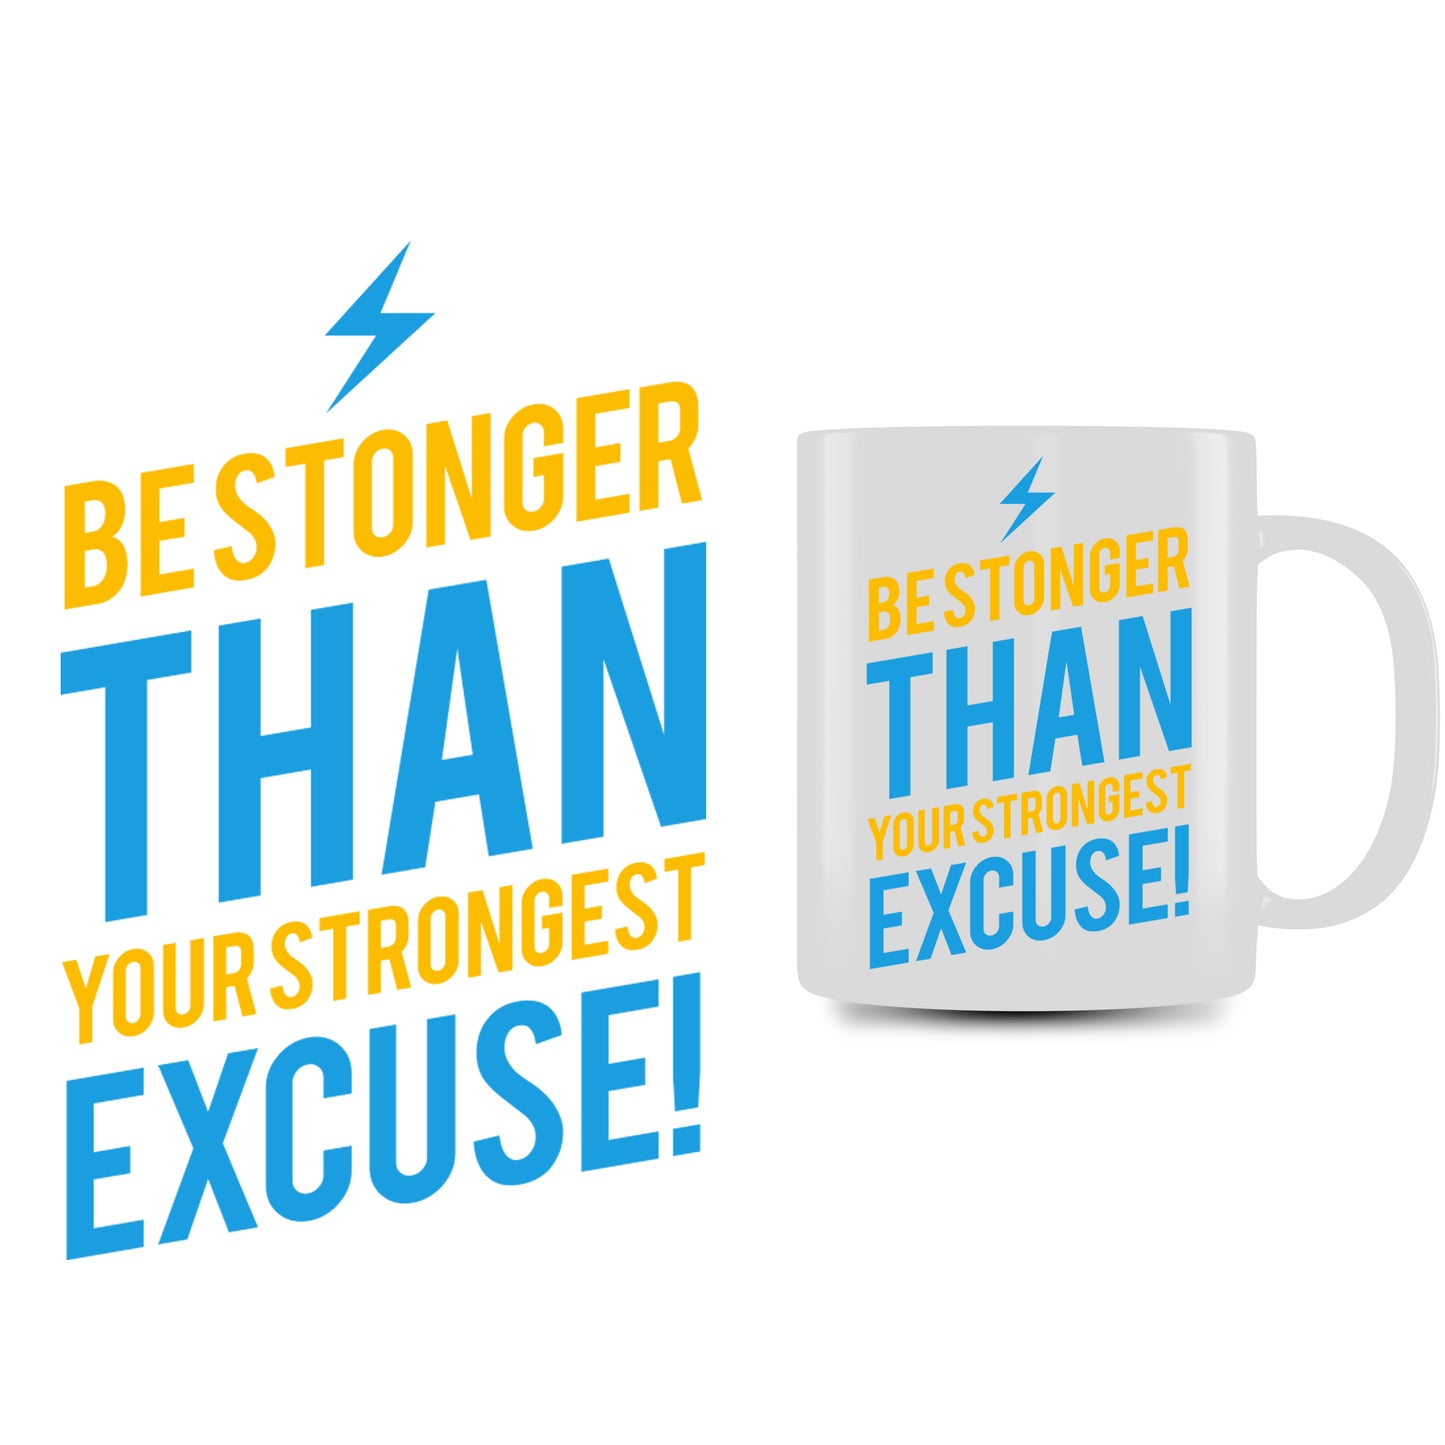 Personalized Mug (Be Stronger)